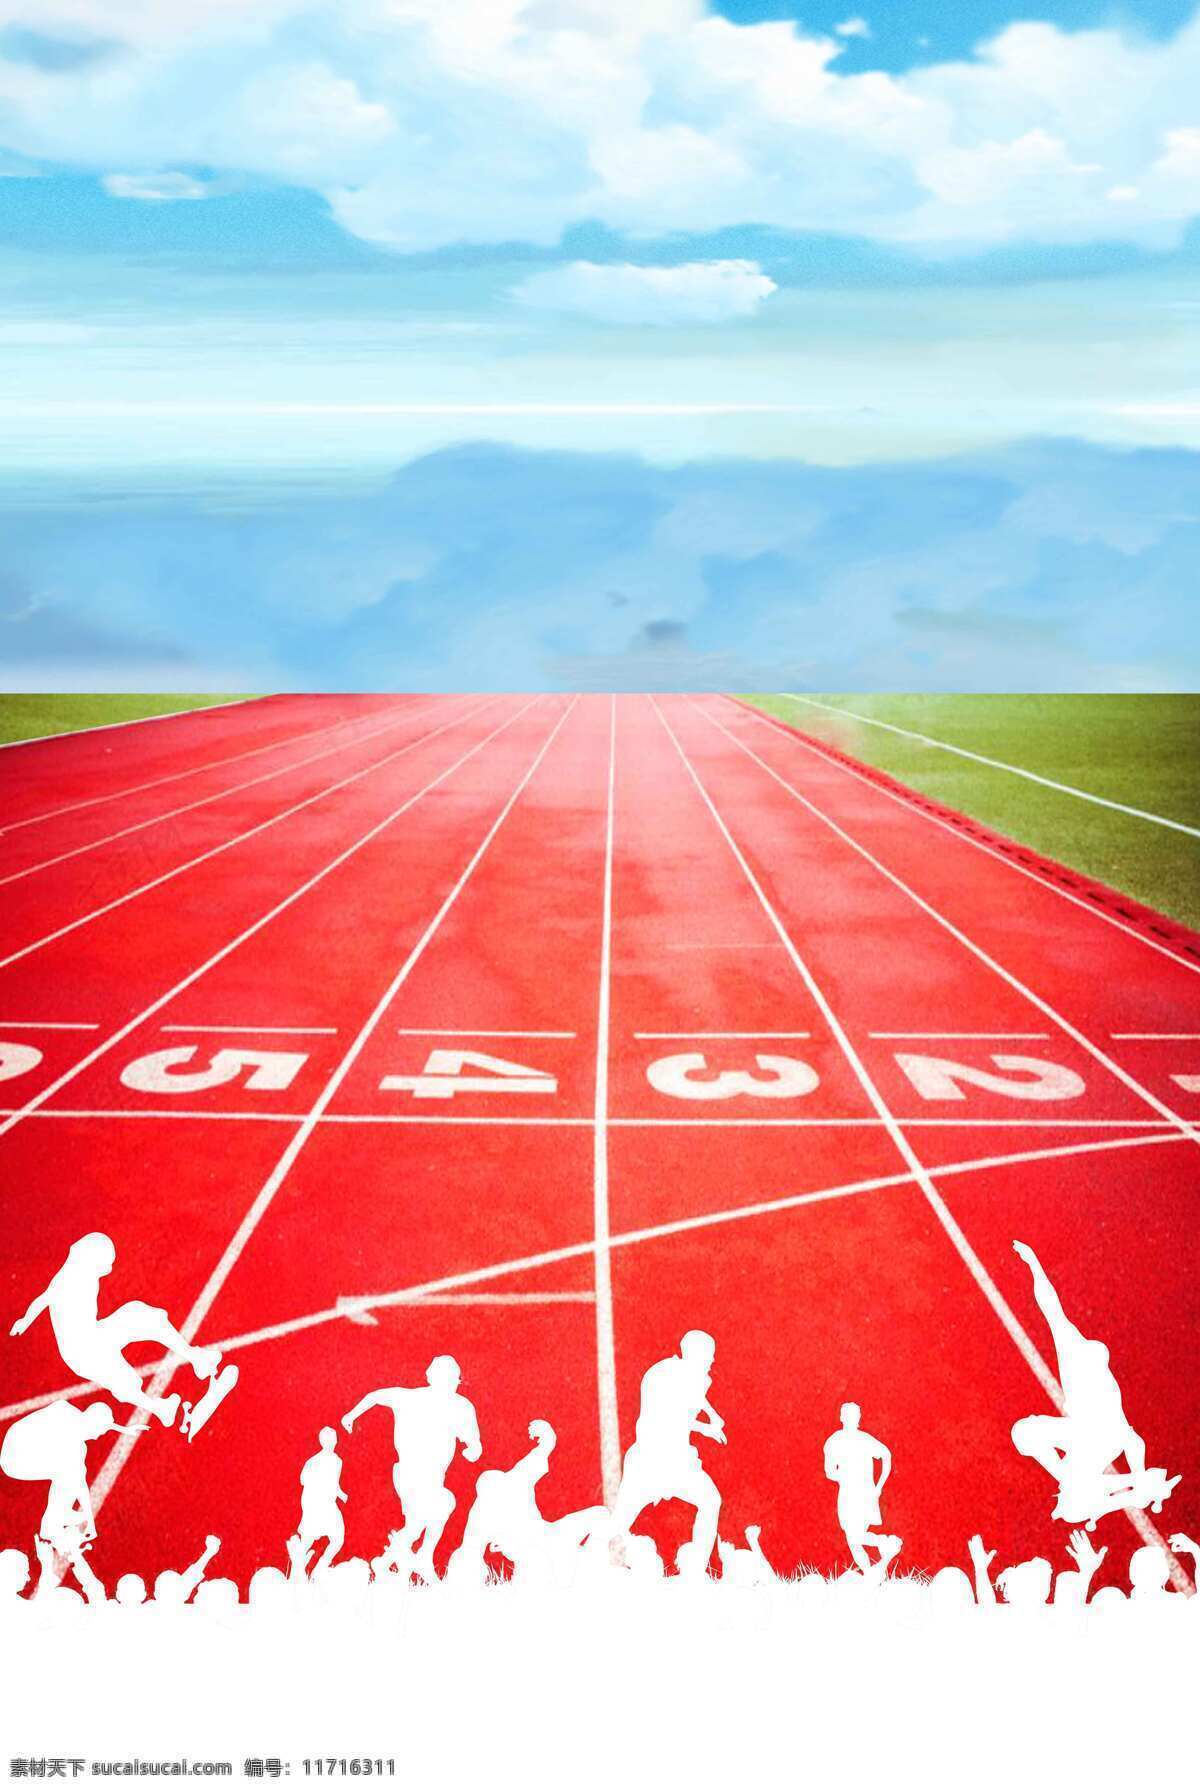 白色 跑道 人物 剪影 校园 运动会 海报 背景 底纹边框 背景底纹